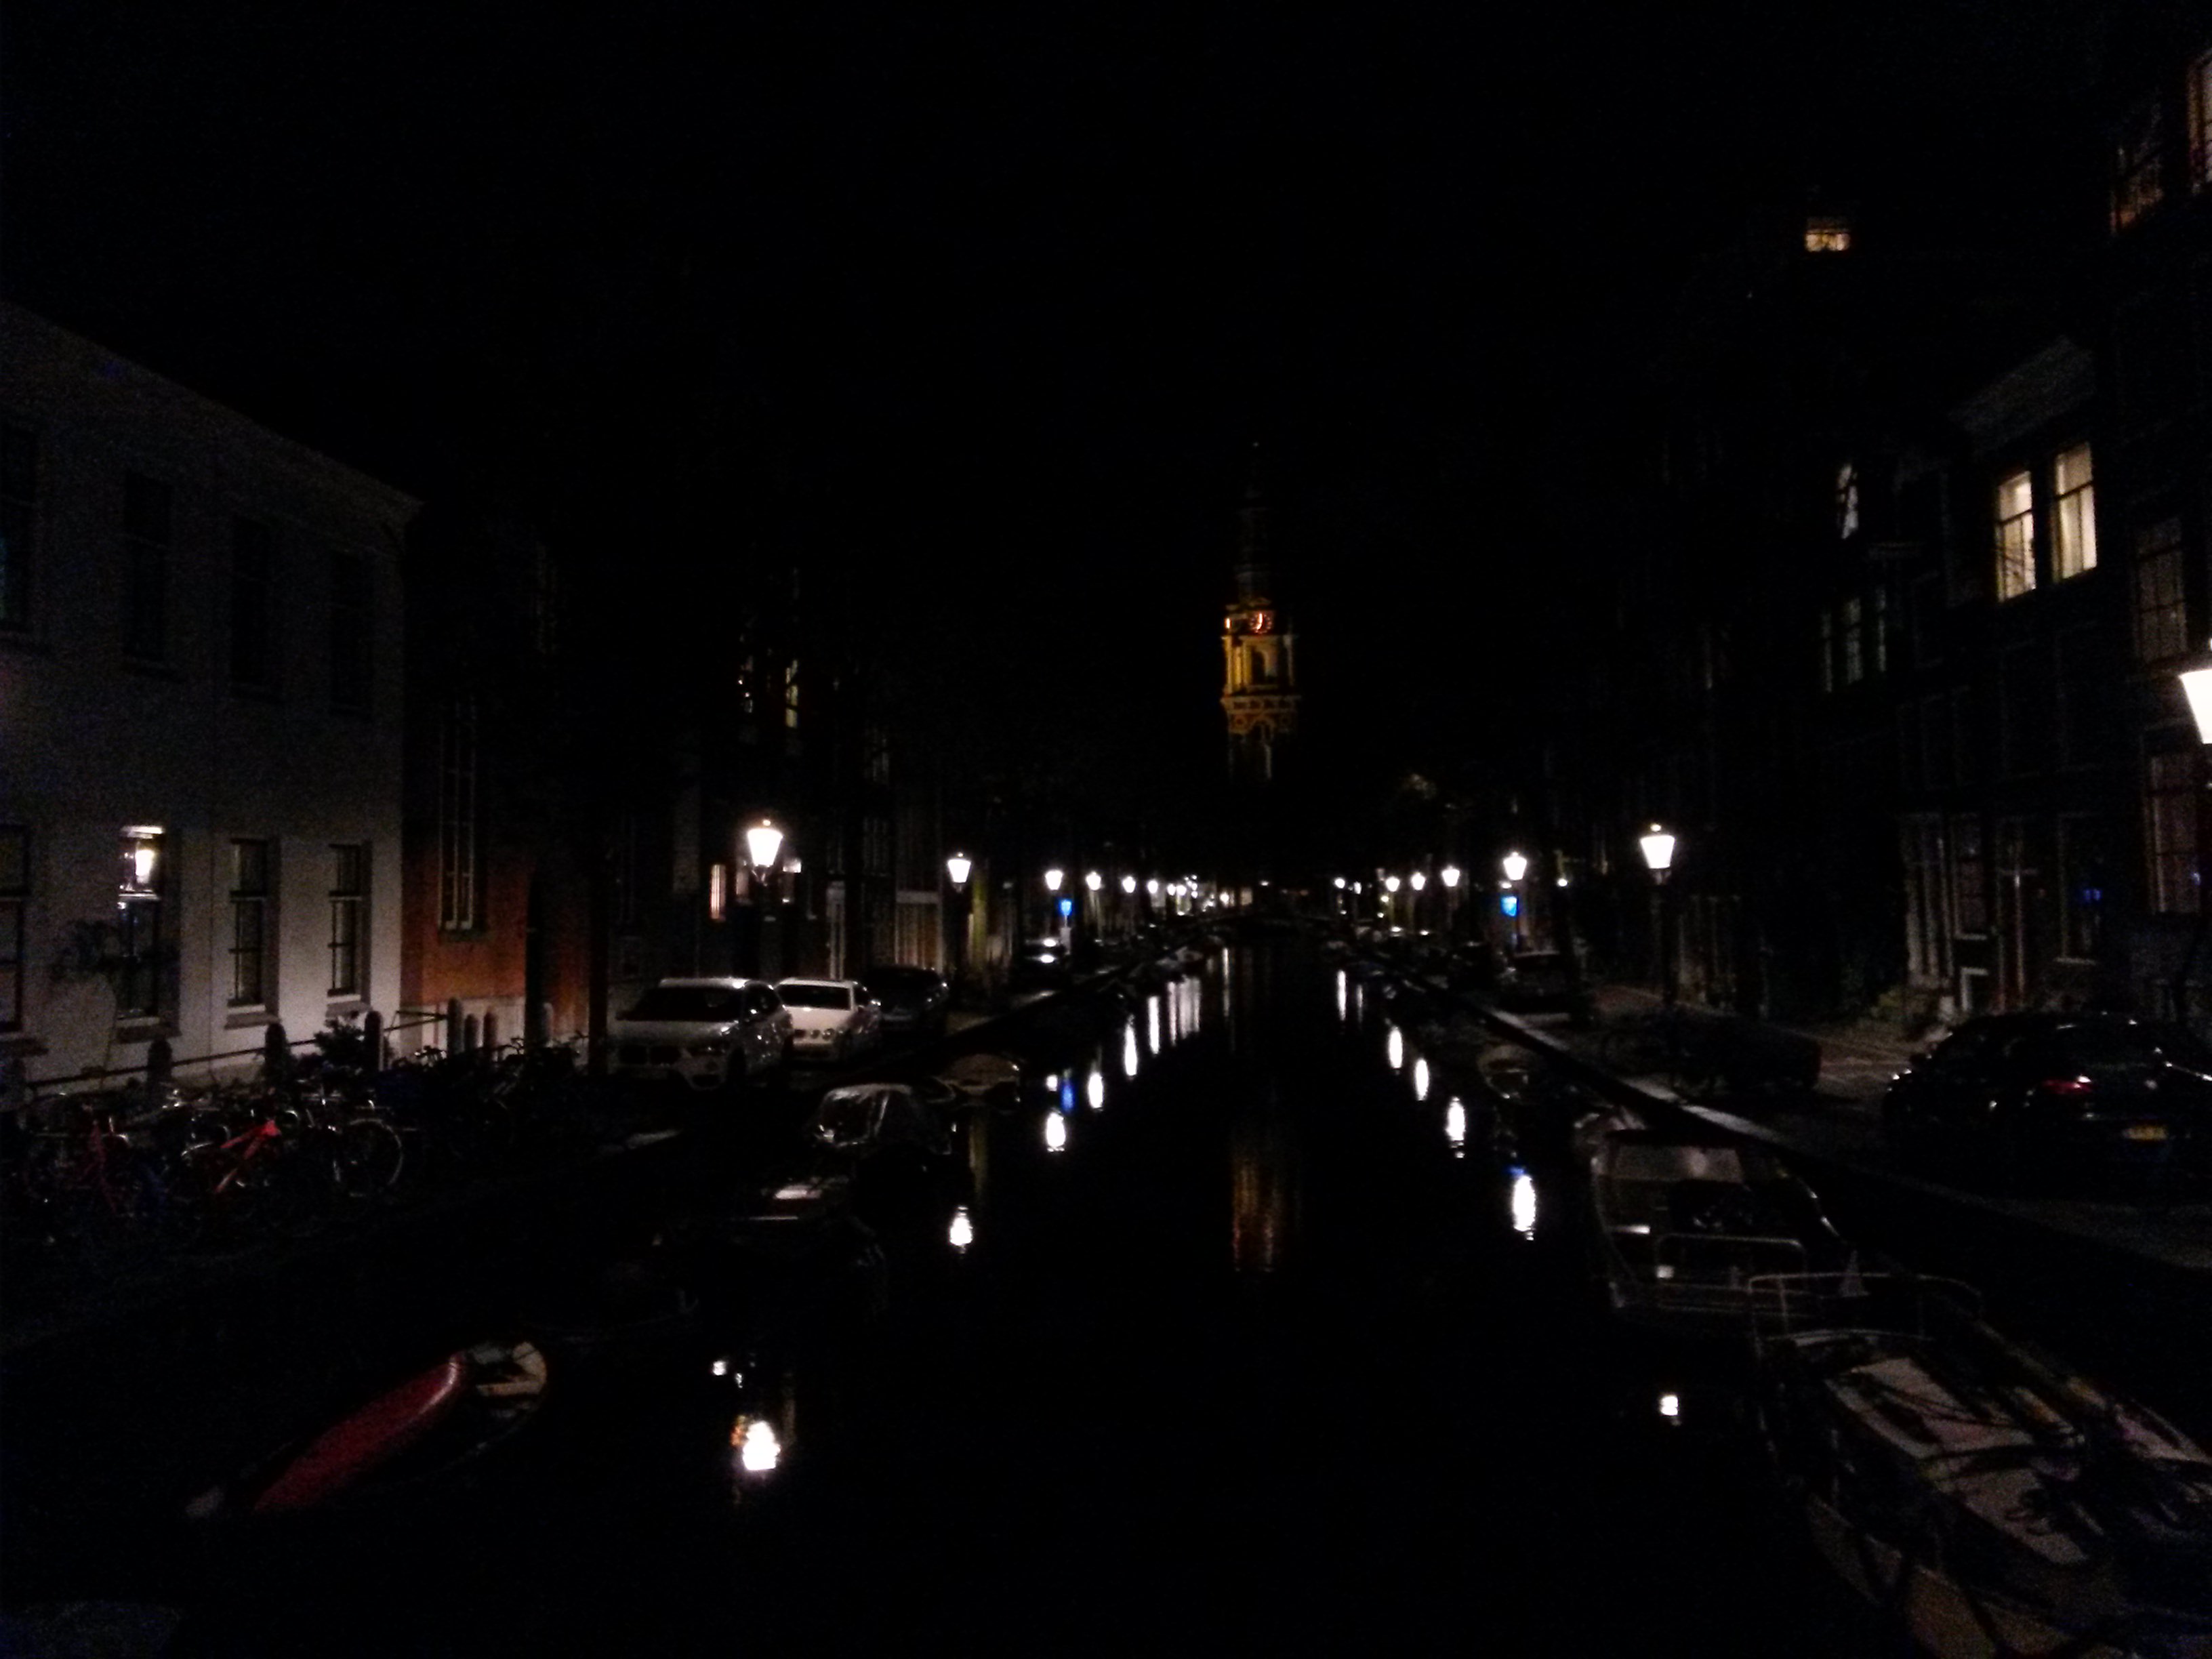 Amsterdam by night.